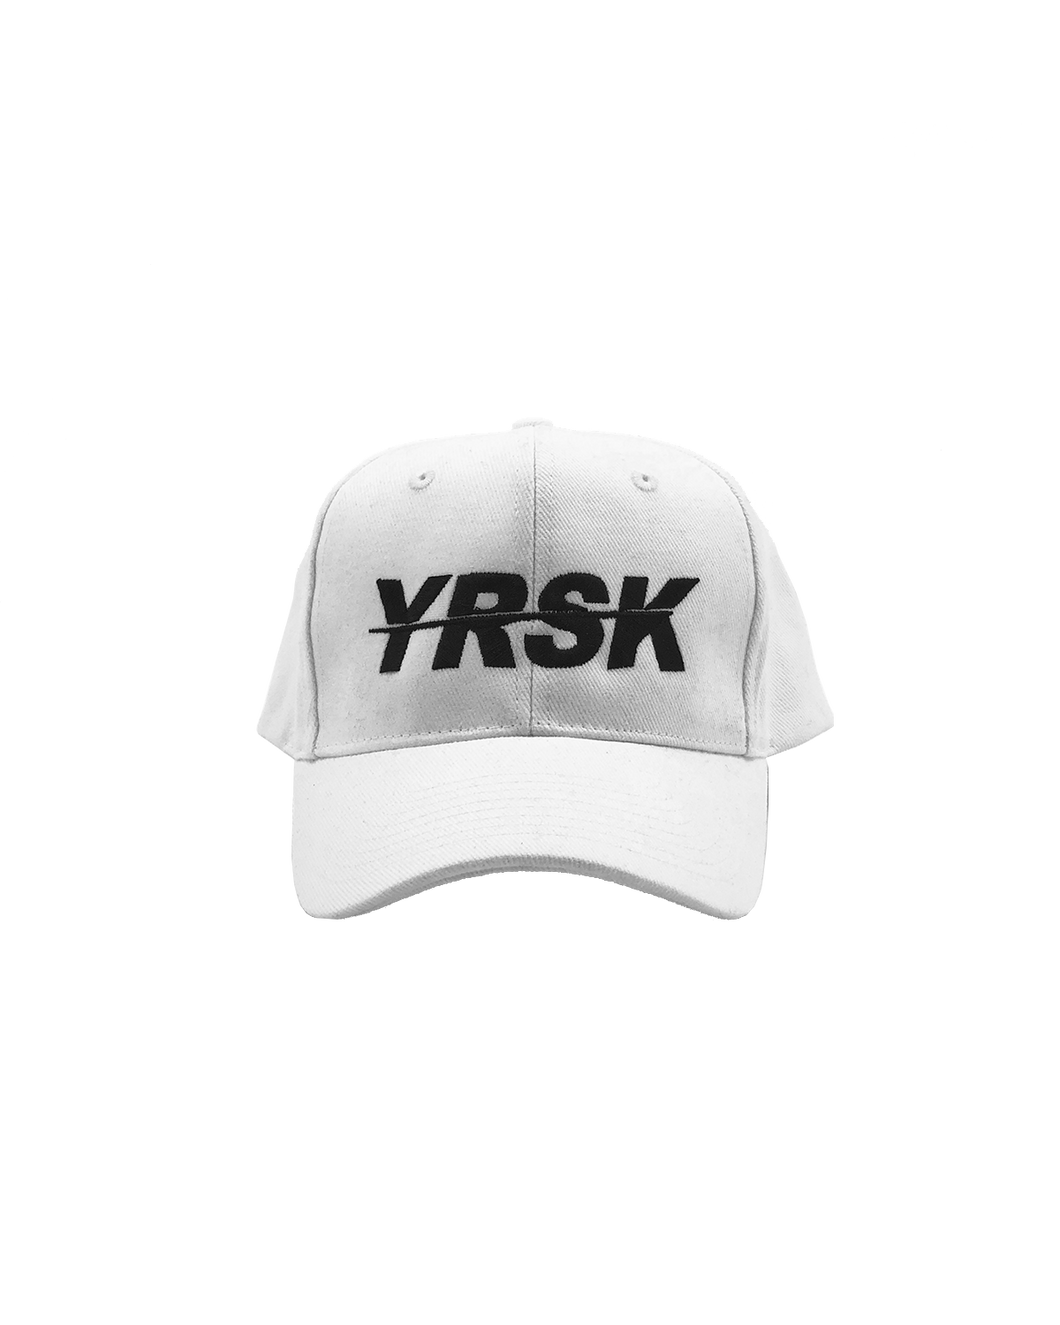 YRSK Baseball Cap